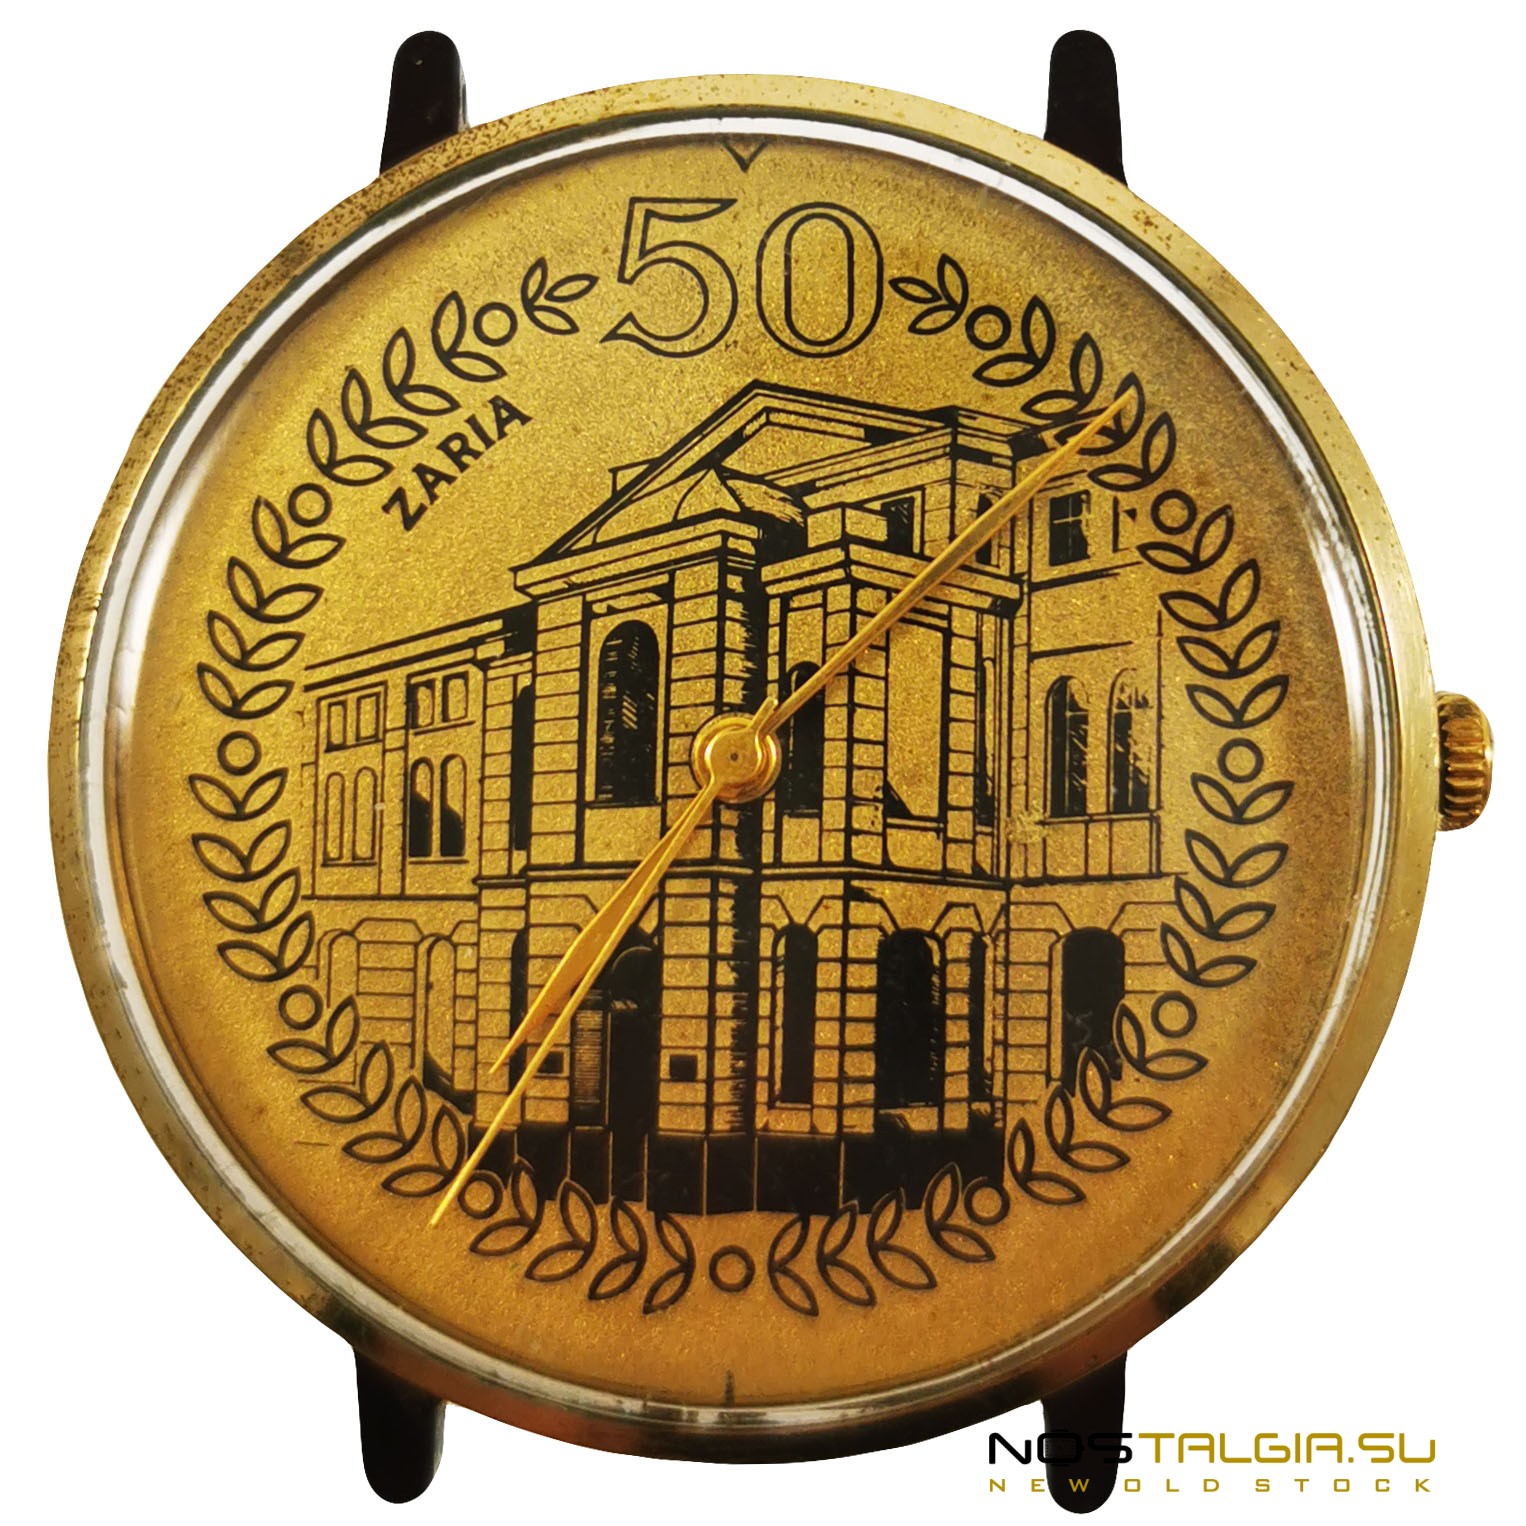 Механические часы "Заря" 2009-B, 50 лет, Юбилейные, хорошее состояние, новые с хранения 